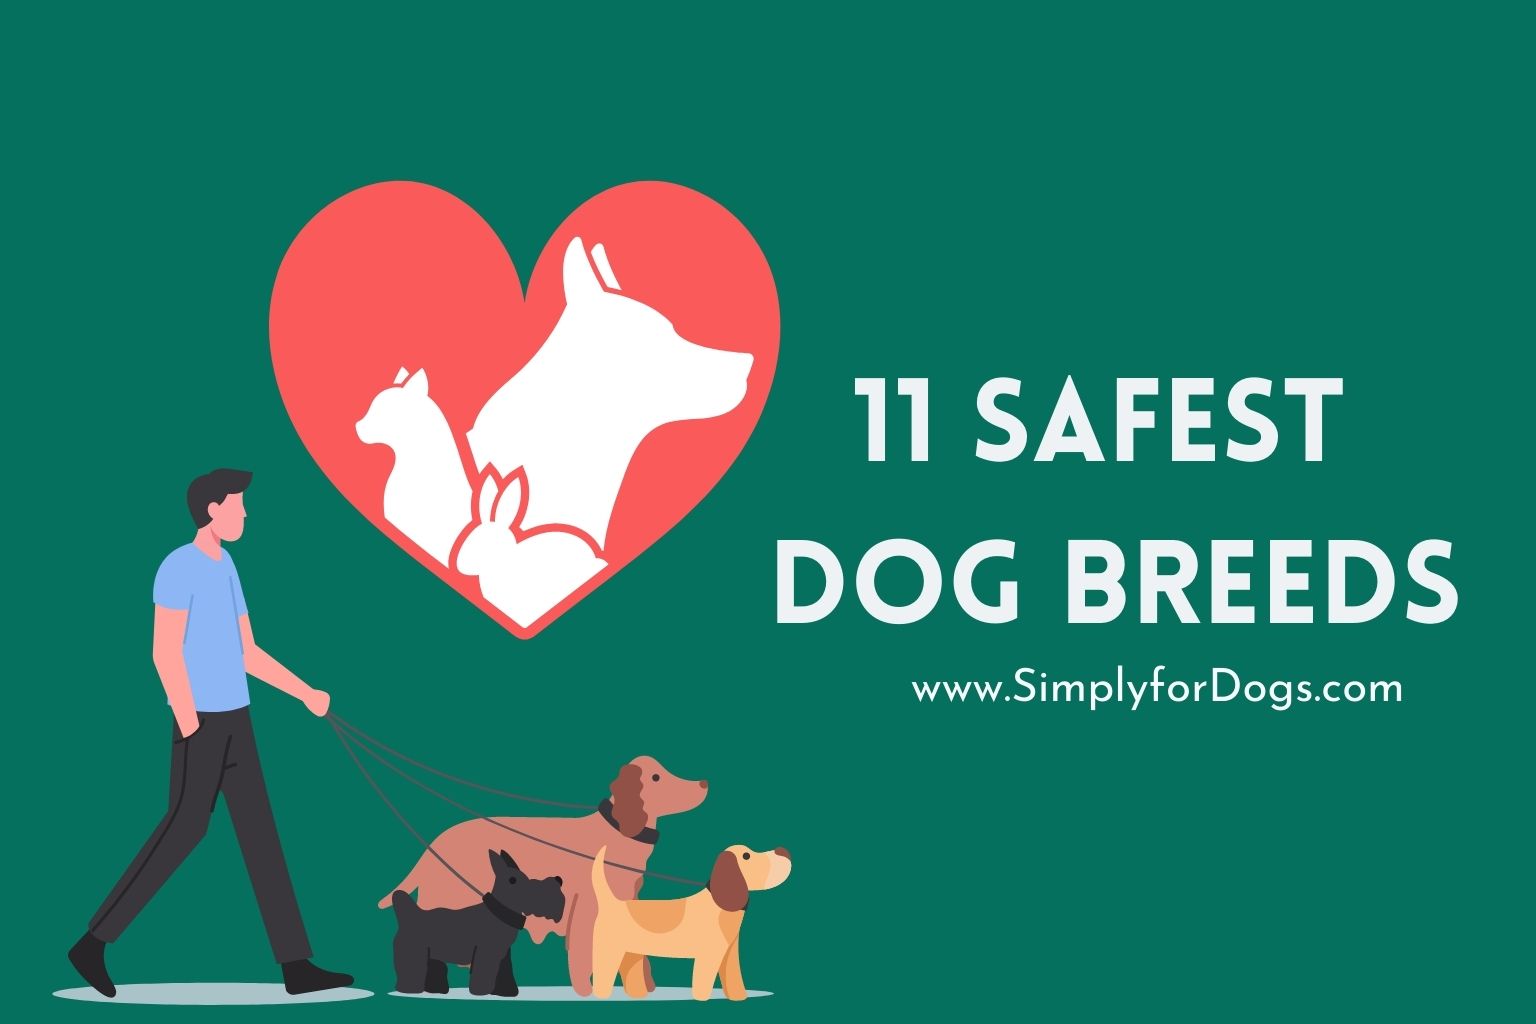 11 Safest Dog Breeds